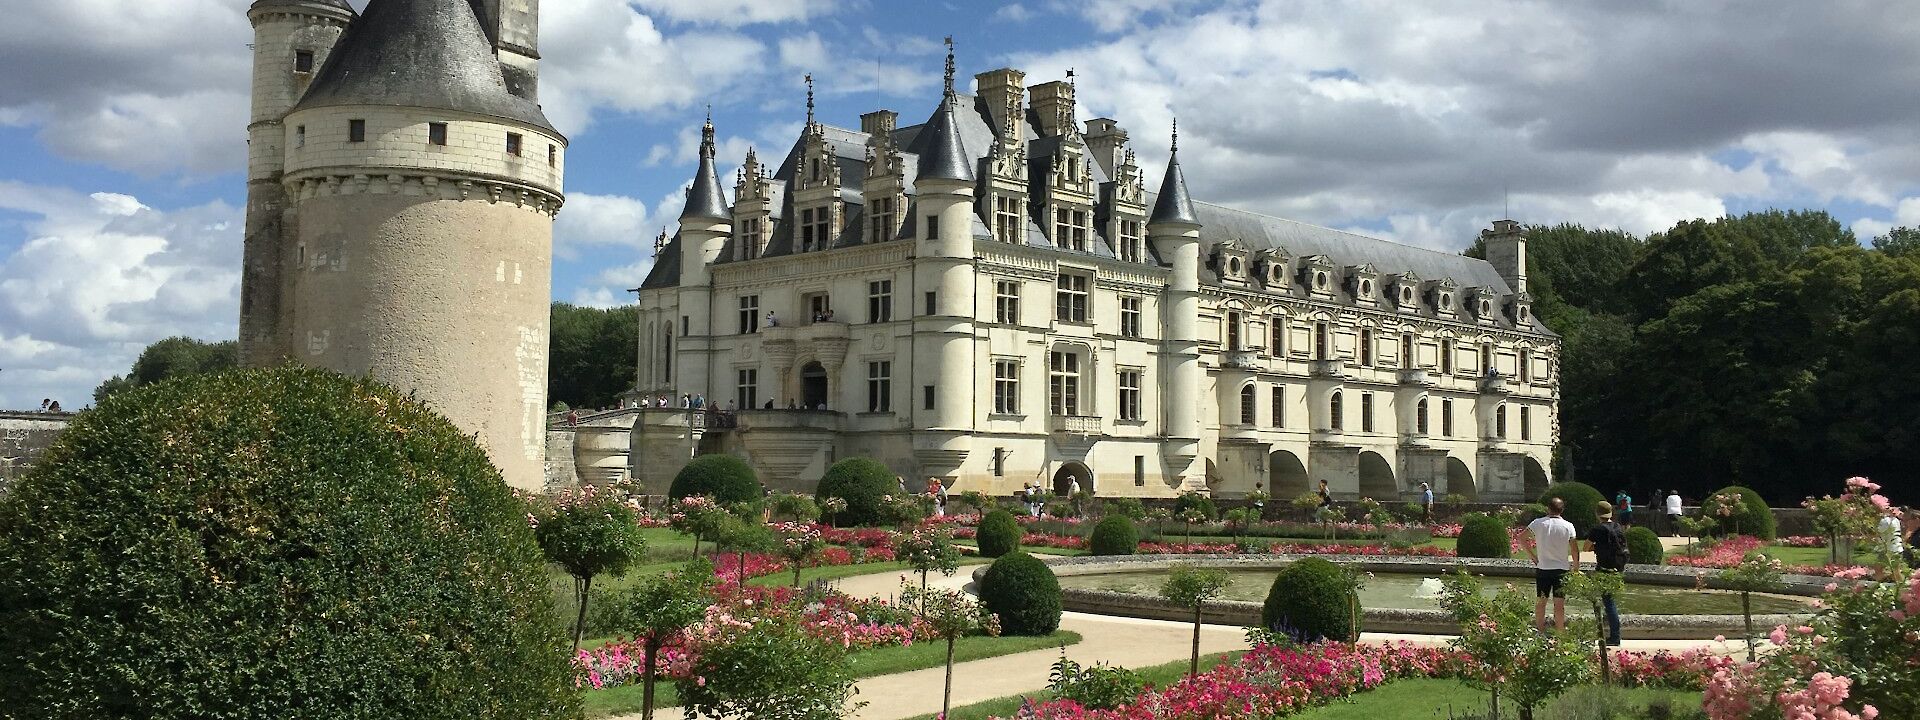 Chateau de Chenonceau, Loire Valley, France. Unsplash: Shaun Rainer